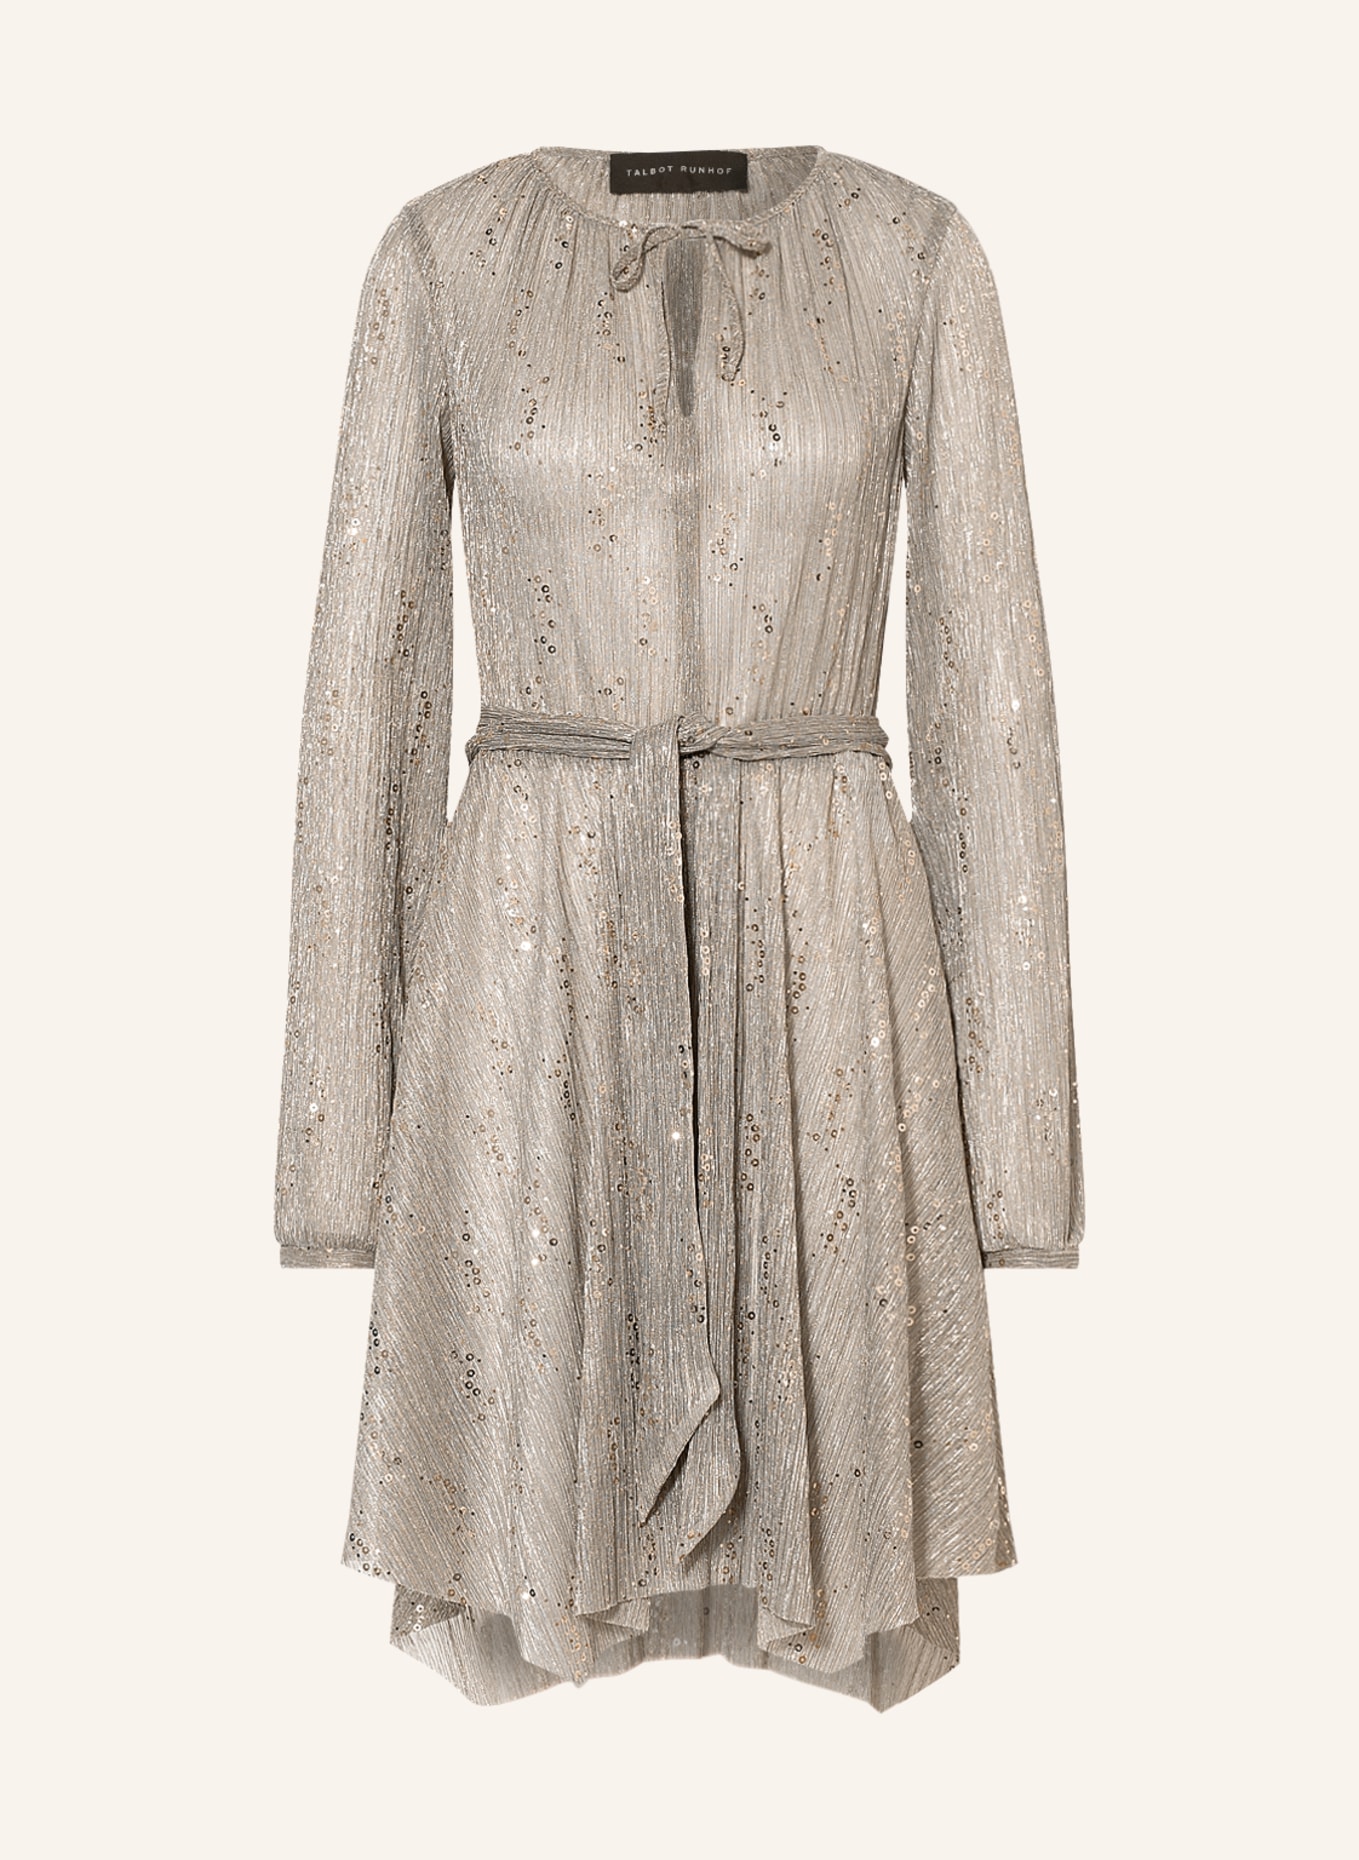 TALBOT RUNHOF Kleid GOYABA1 mit Glanzgarn und Pailletten, Farbe: GOLD (Bild 1)